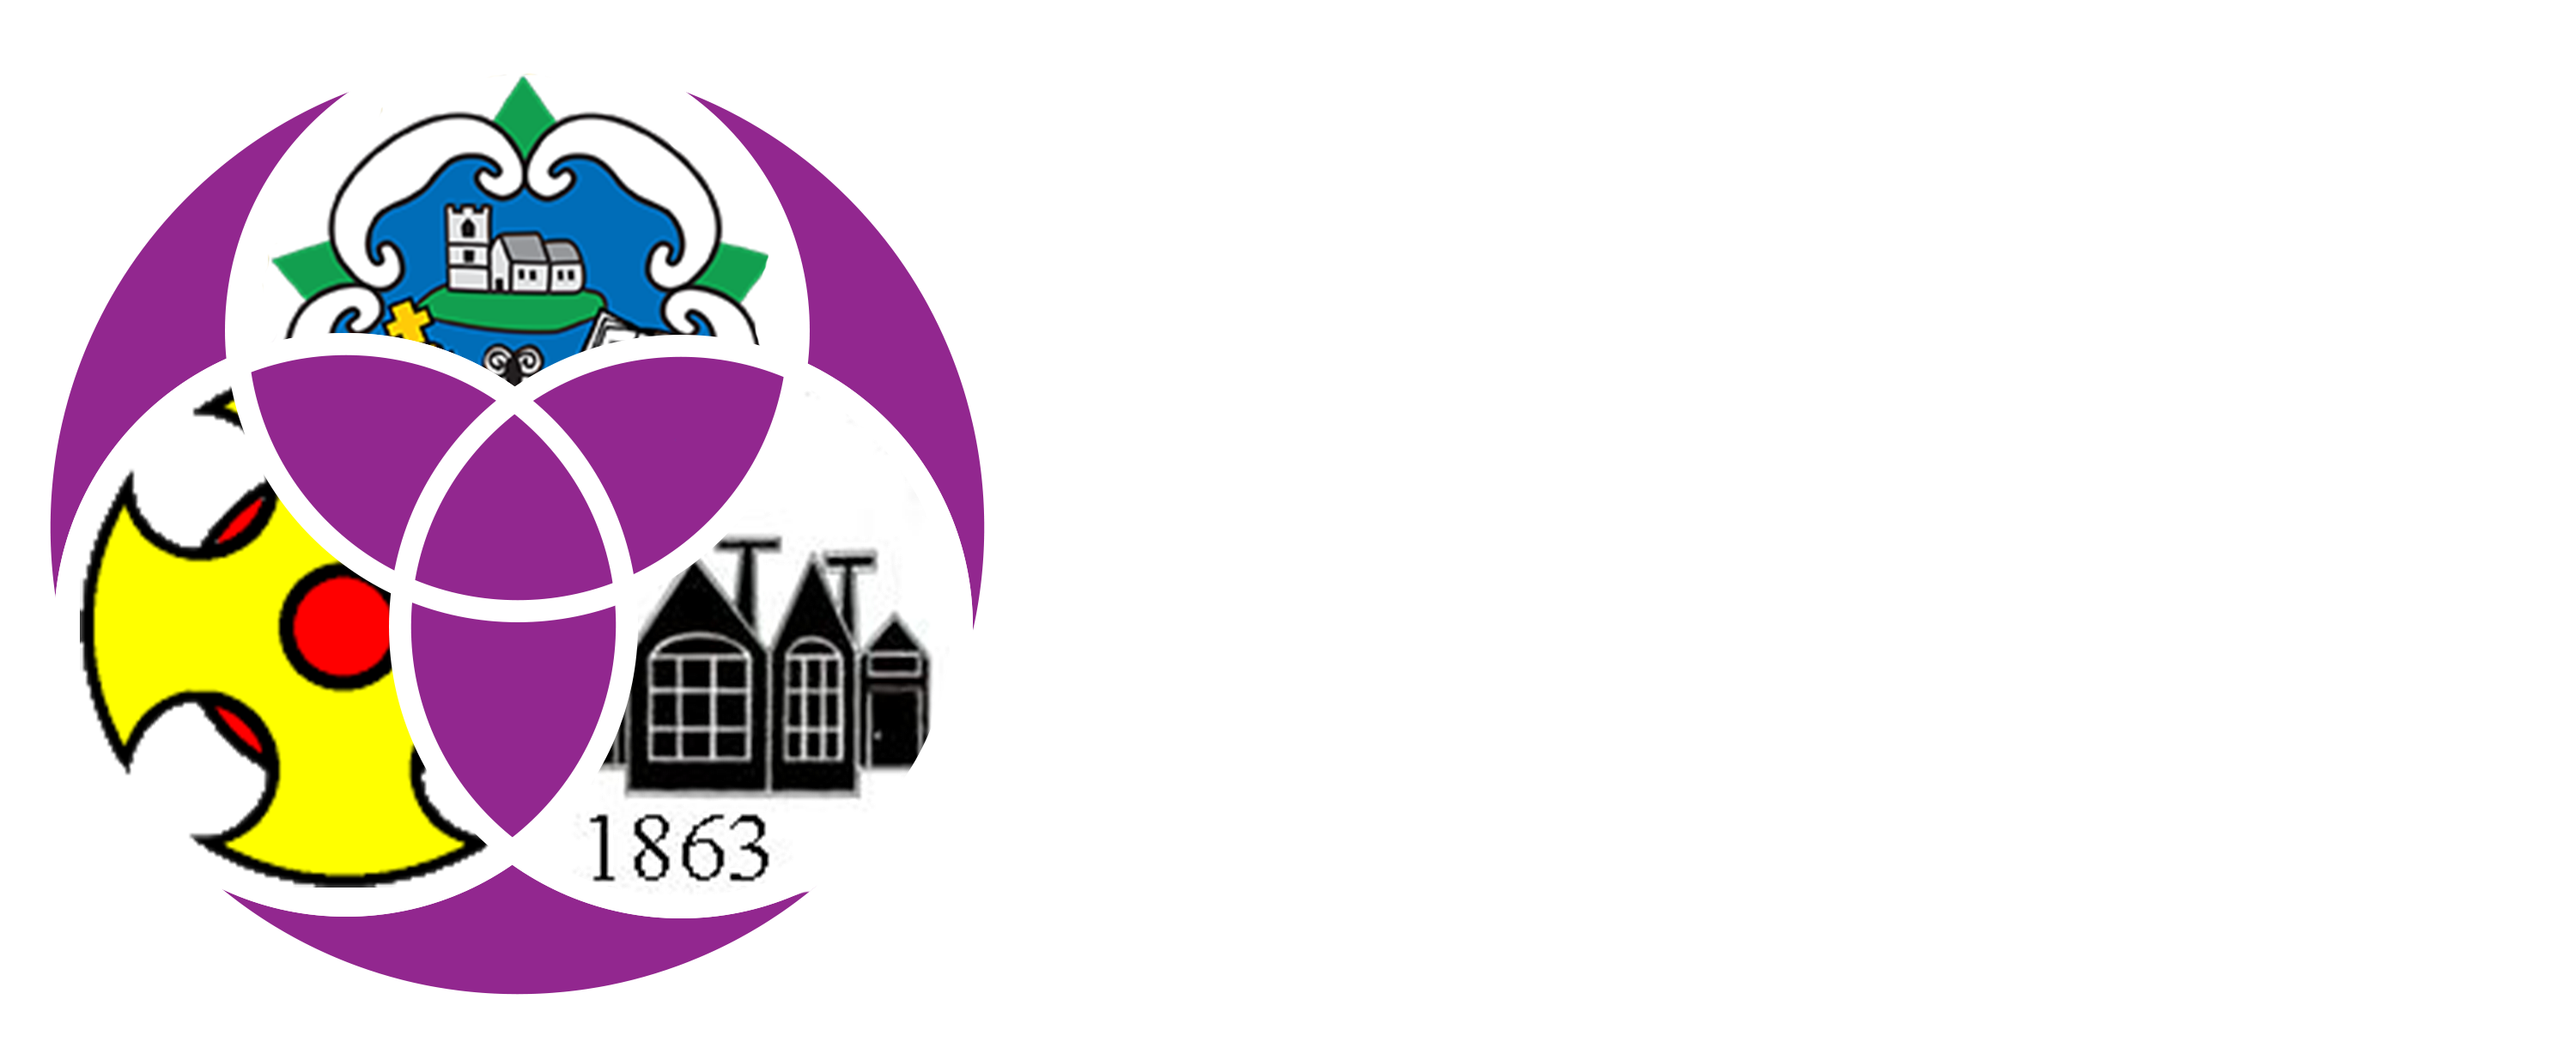 Uppper Nidderdale Federation